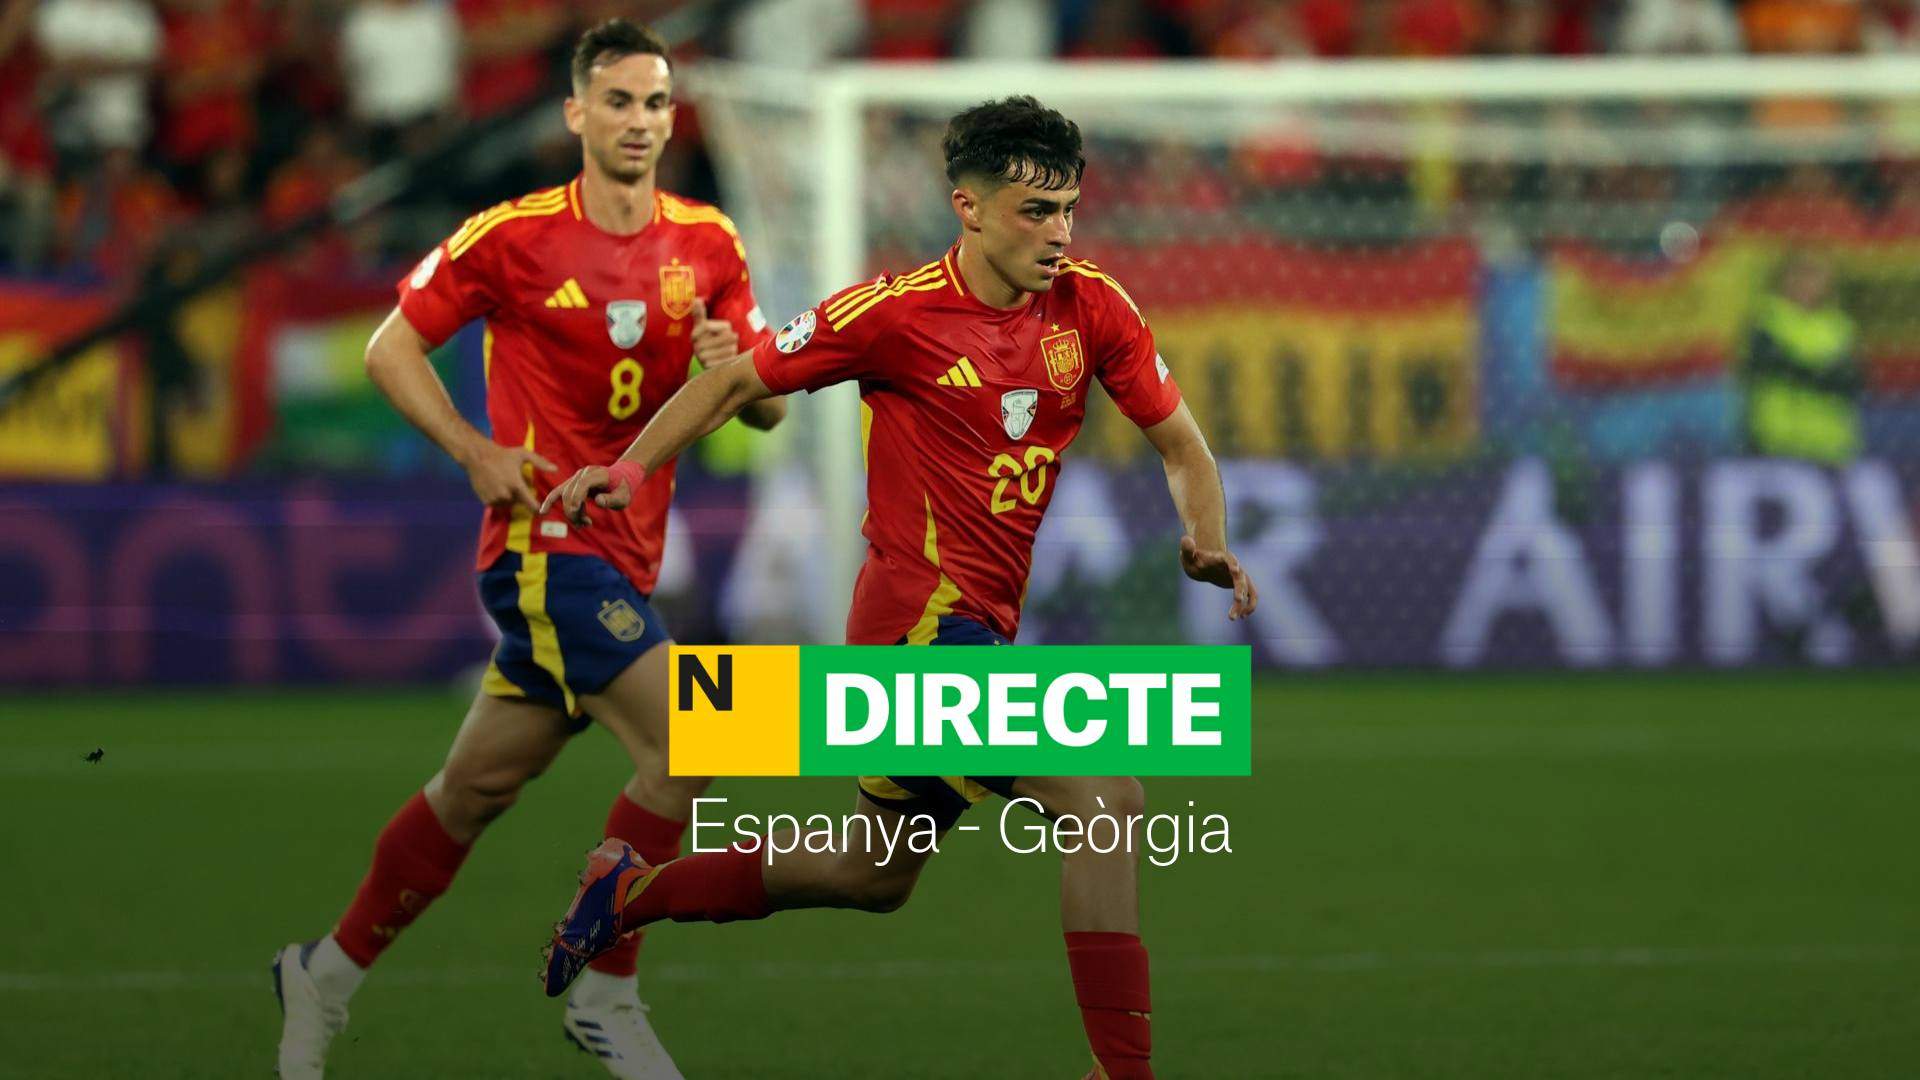 España - Georgia, DIRECTO | Resultado, resumen y goles